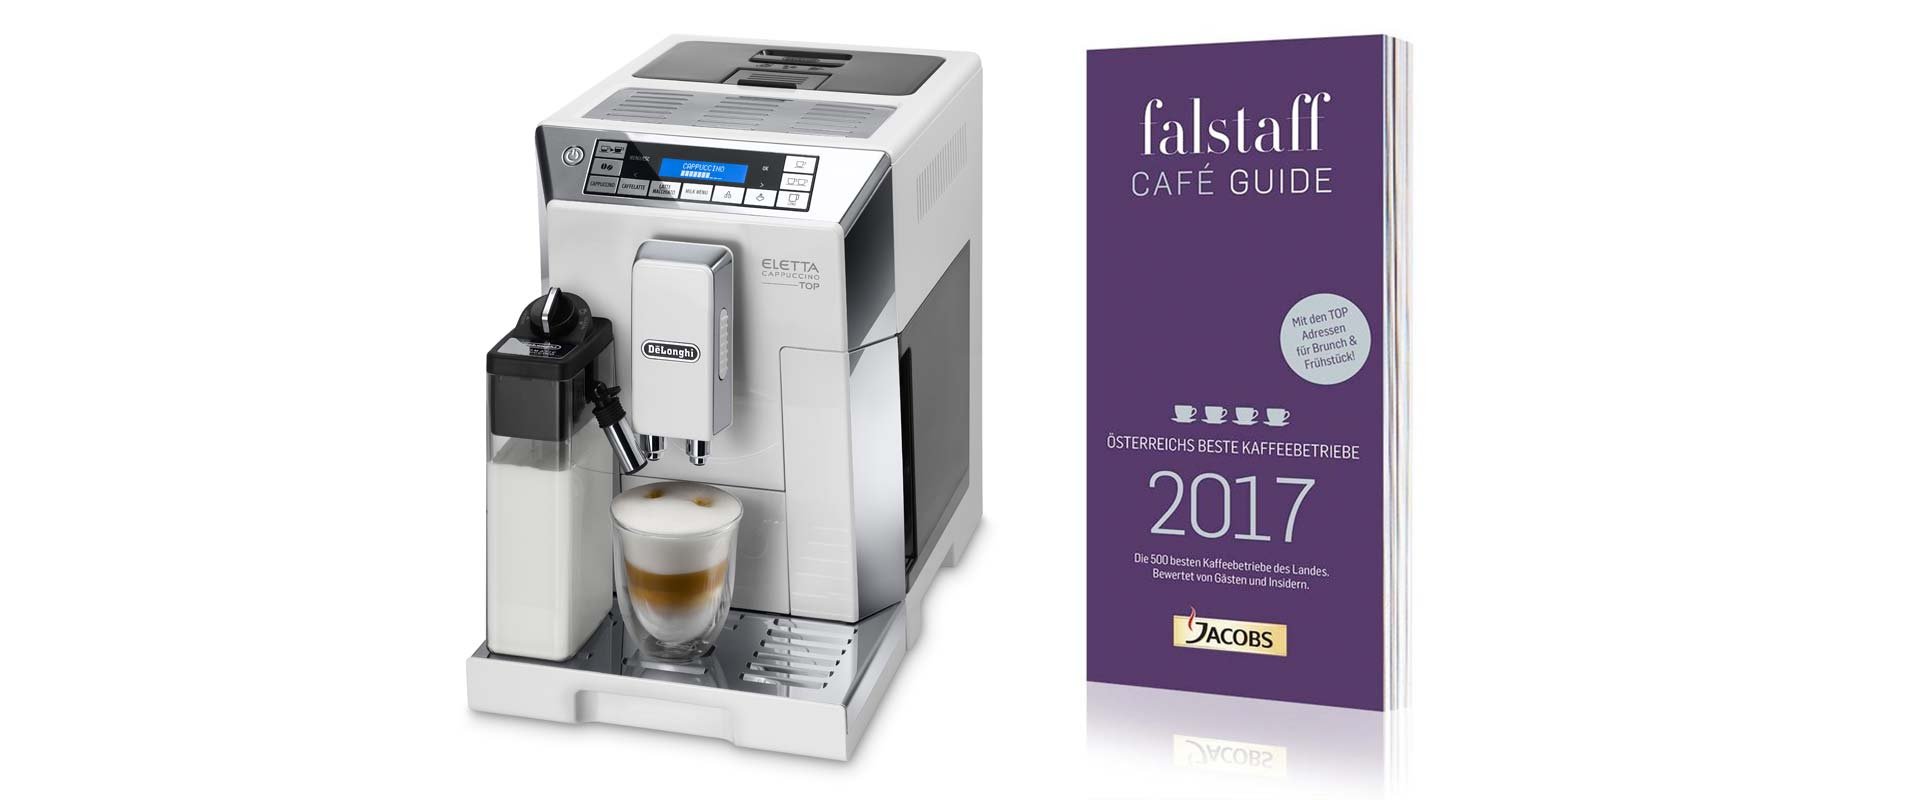 Unter allen, die ihr Voting für den Falstaff Café Guide 2017 abgeben,
 werden vier De'Longhi Eletta Cappuccino Top Kaffeevollautomaten verlost.